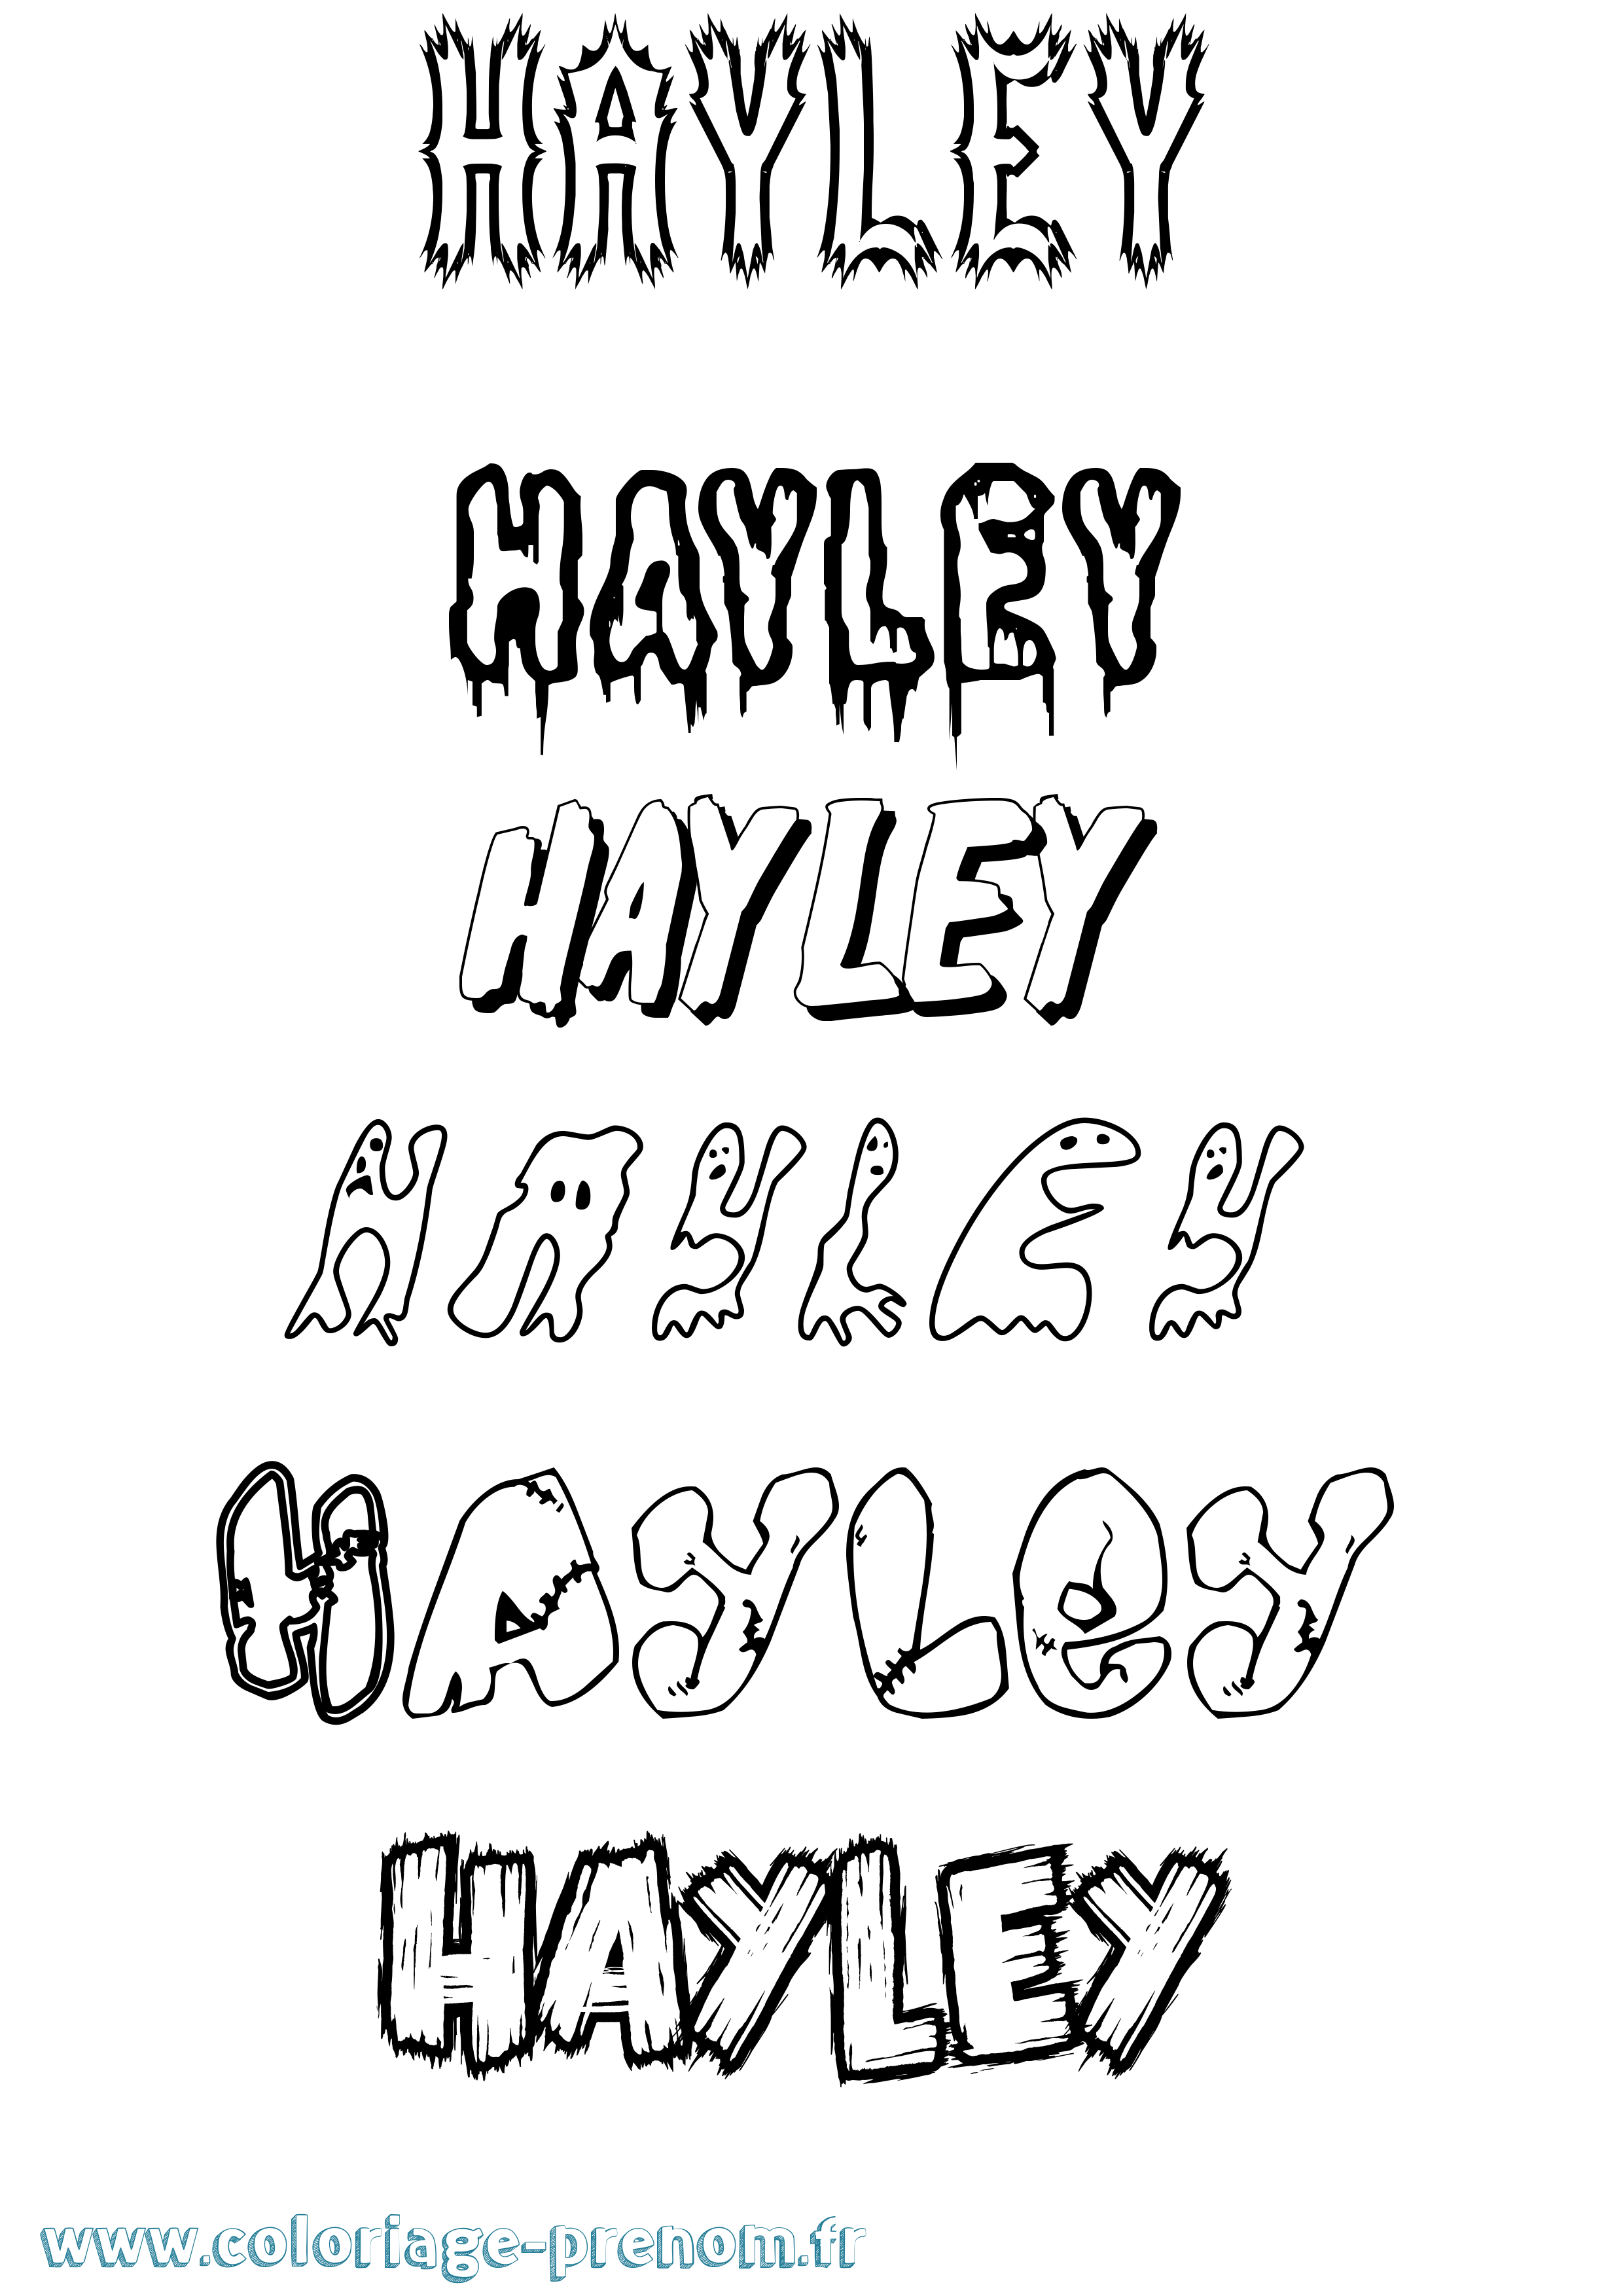 Coloriage prénom Hayley Frisson